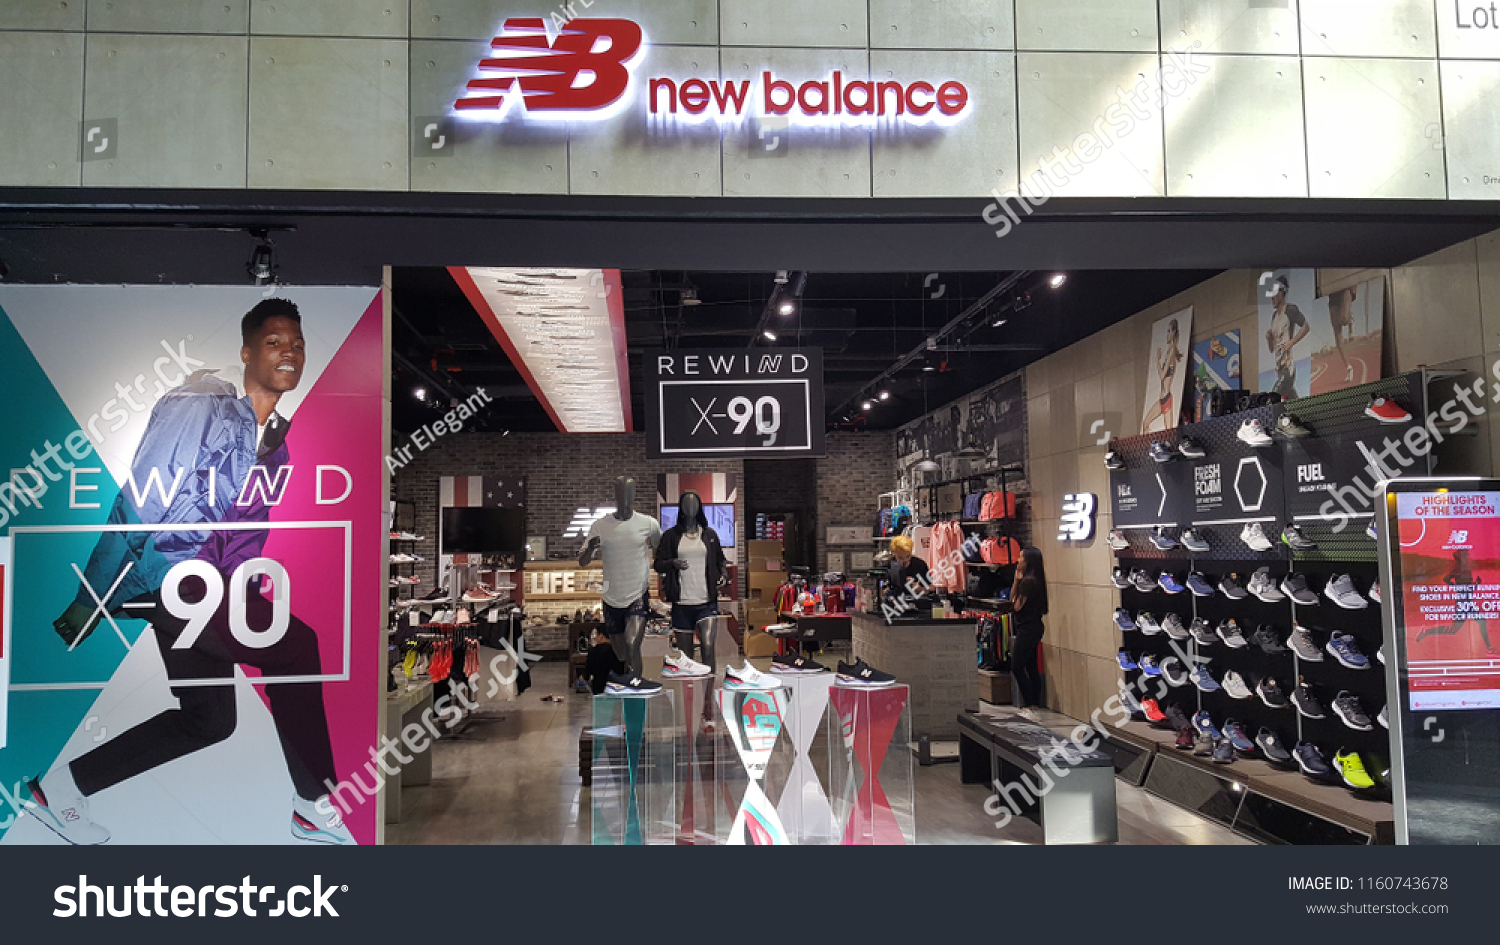 new balance online store malaysia